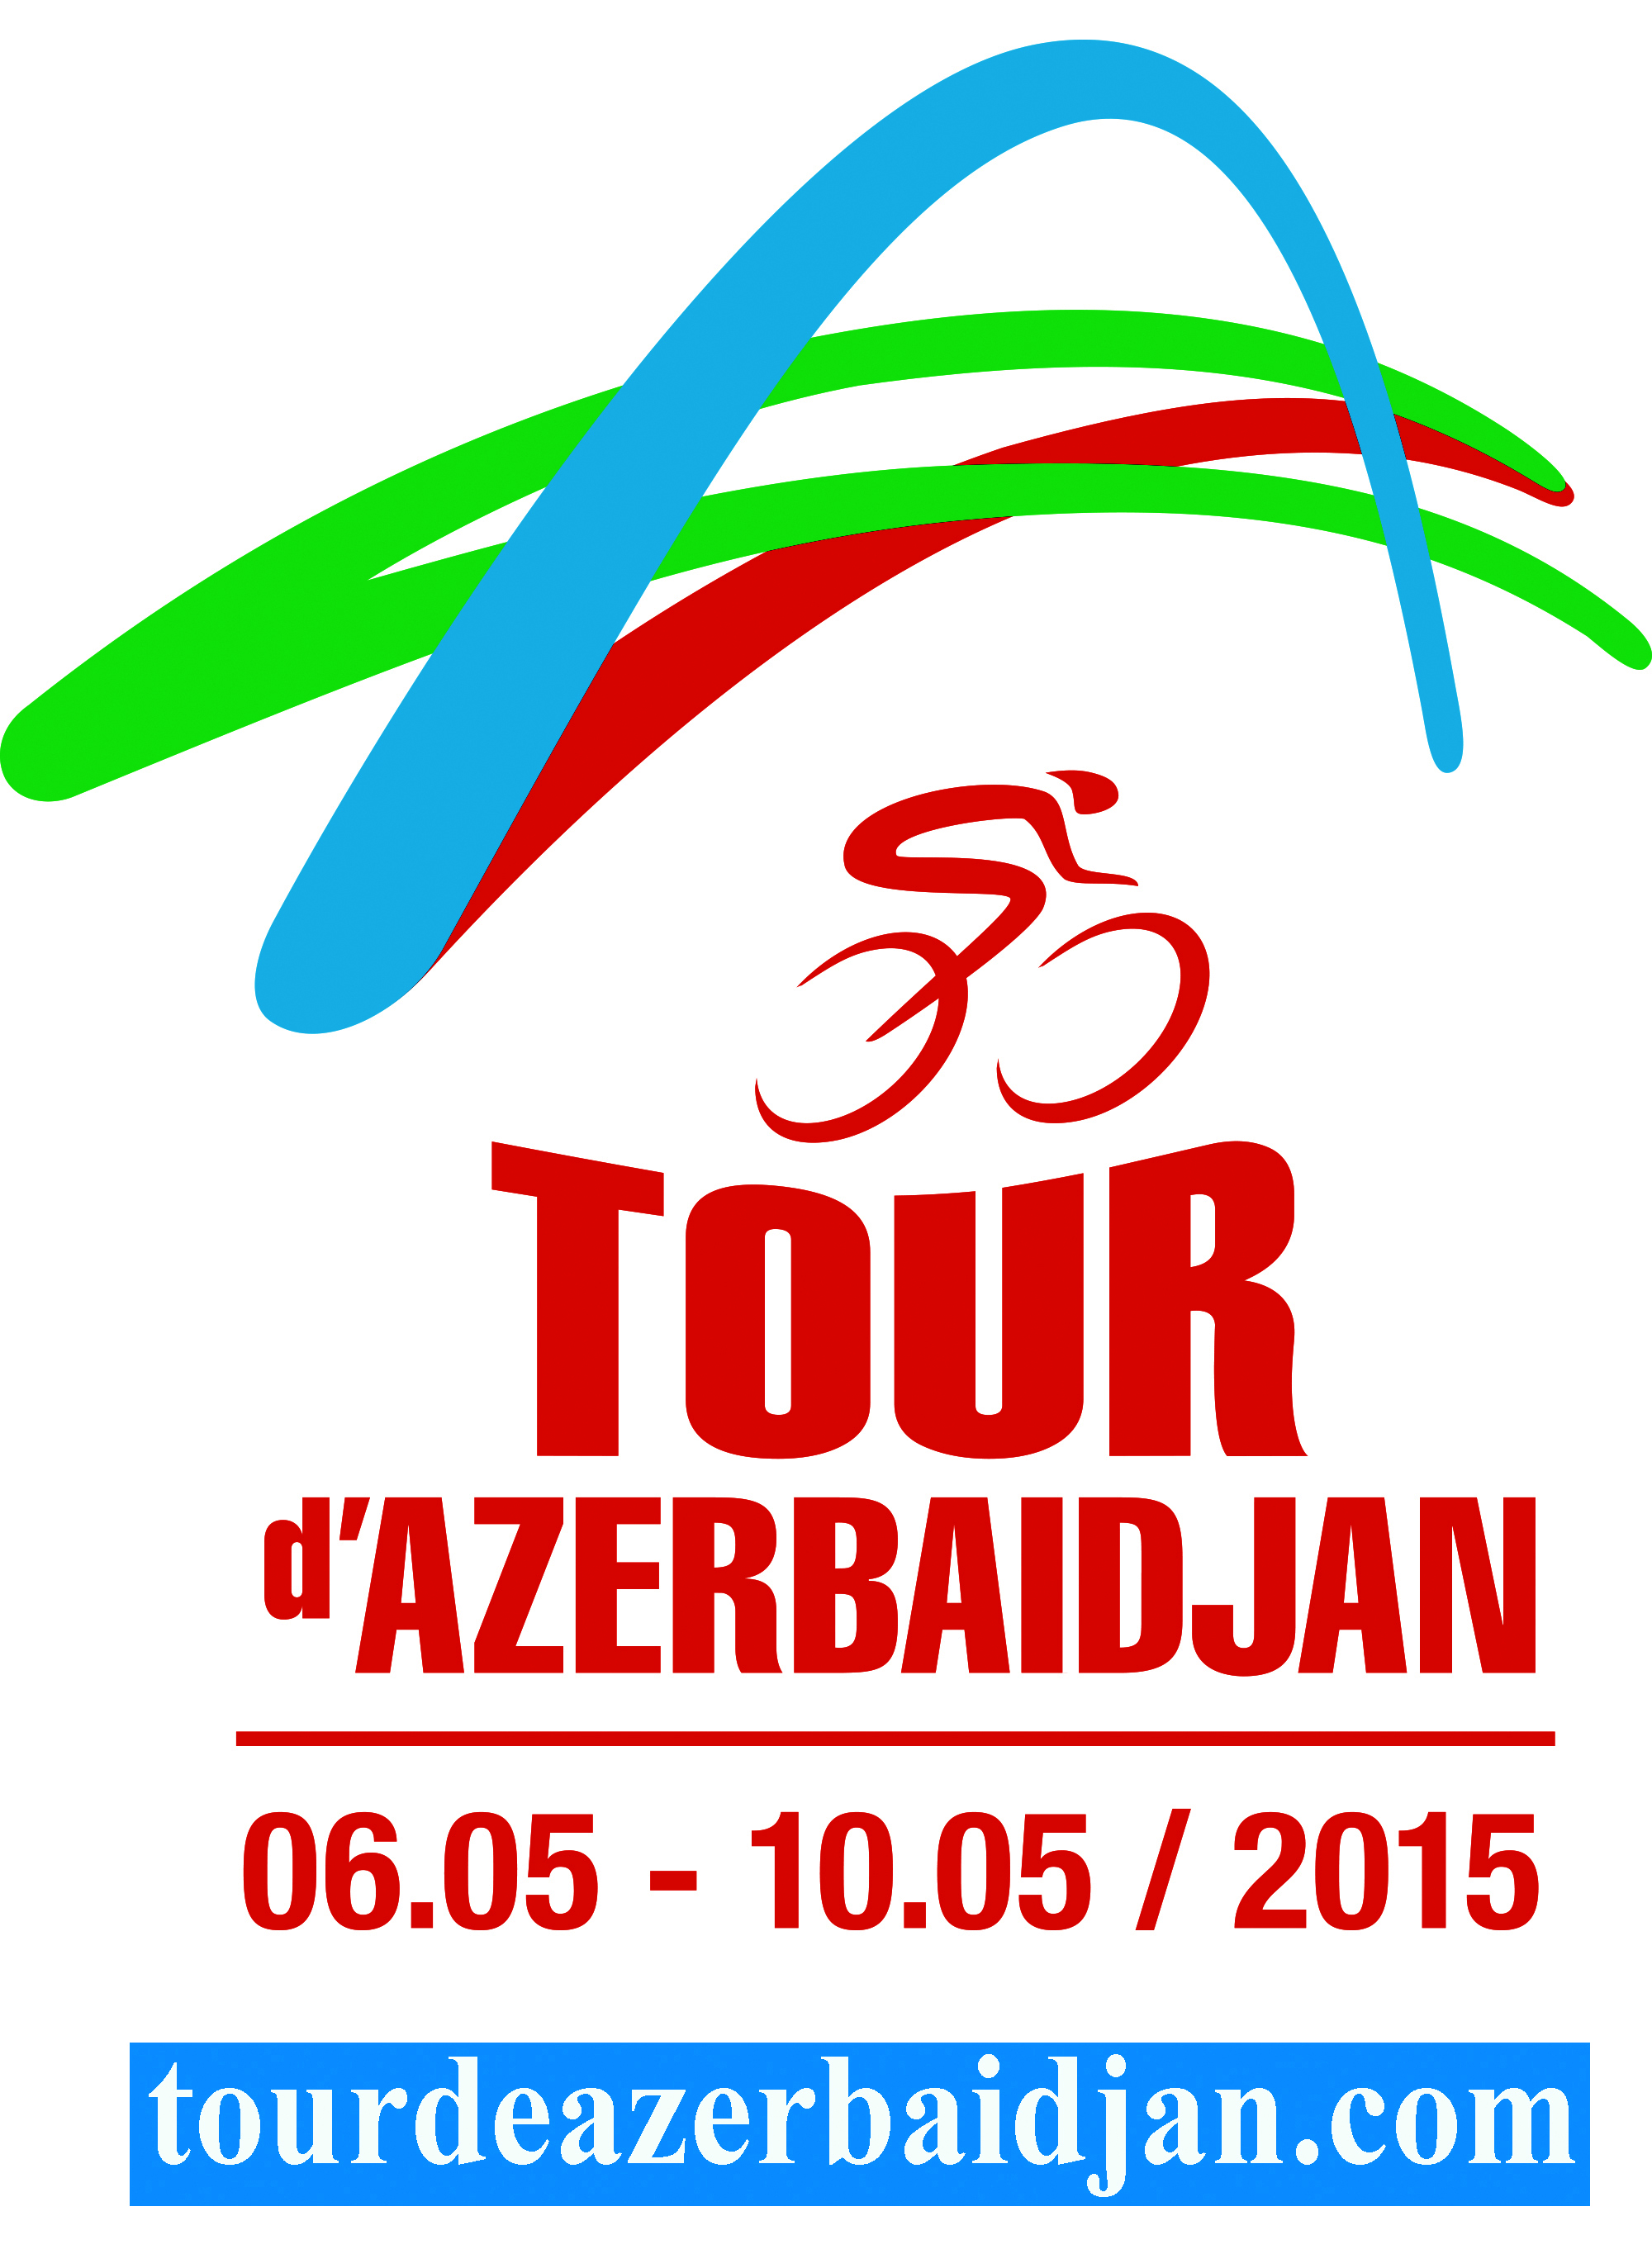 Tour d’Azerbaidjan-2015: 5 gün ərzində 870 km